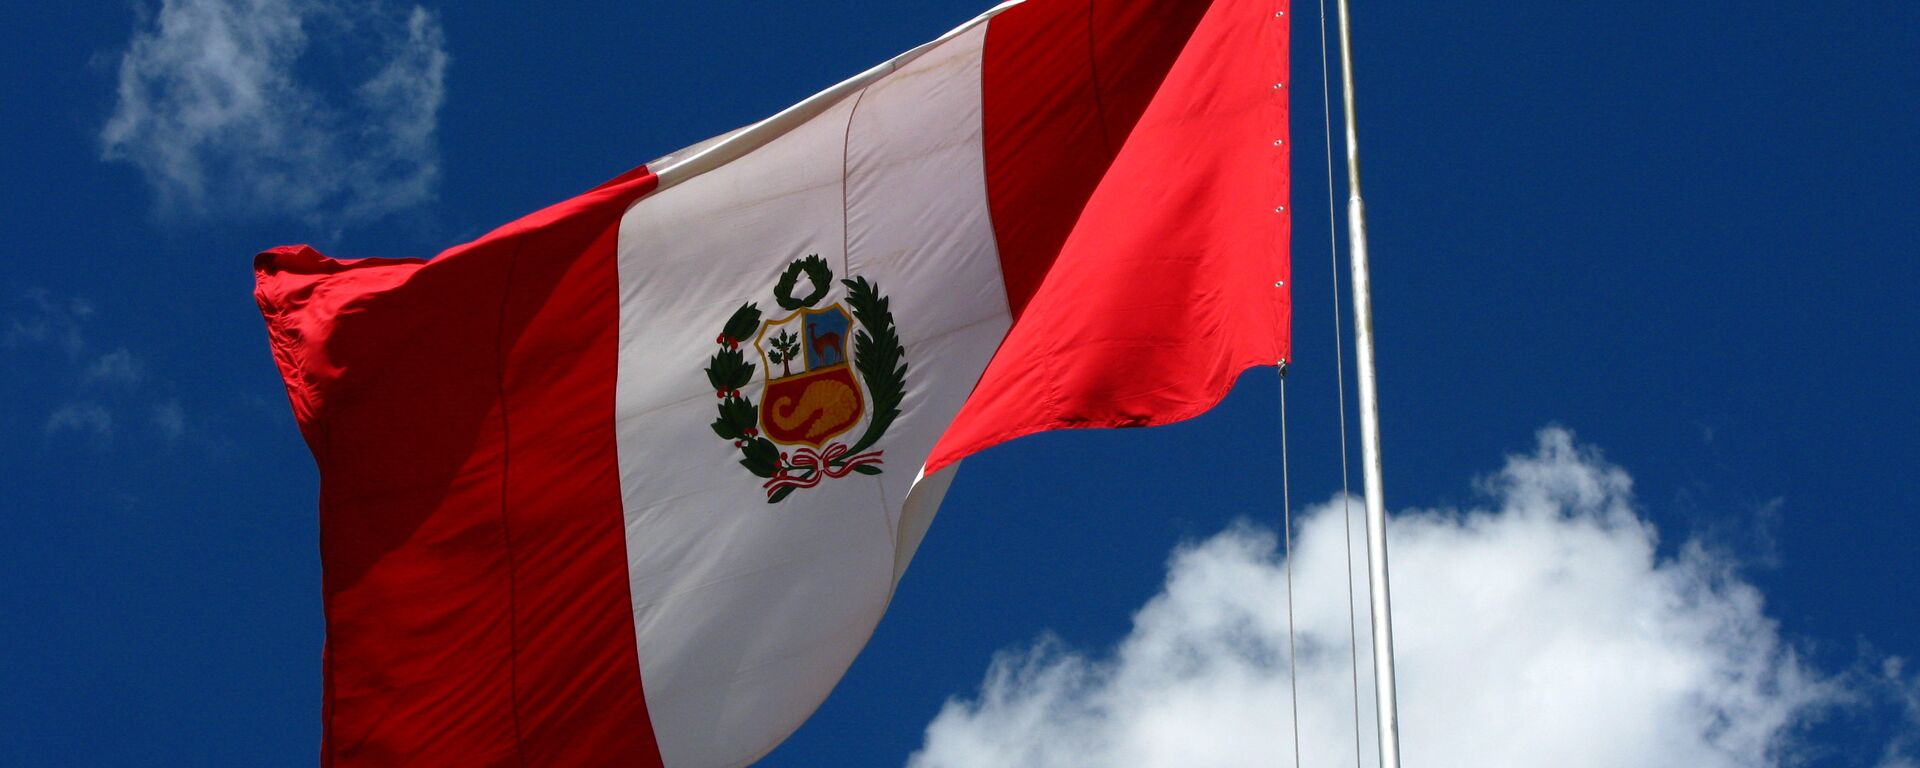 Bandera del Perú - Sputnik Mundo, 1920, 18.11.2021